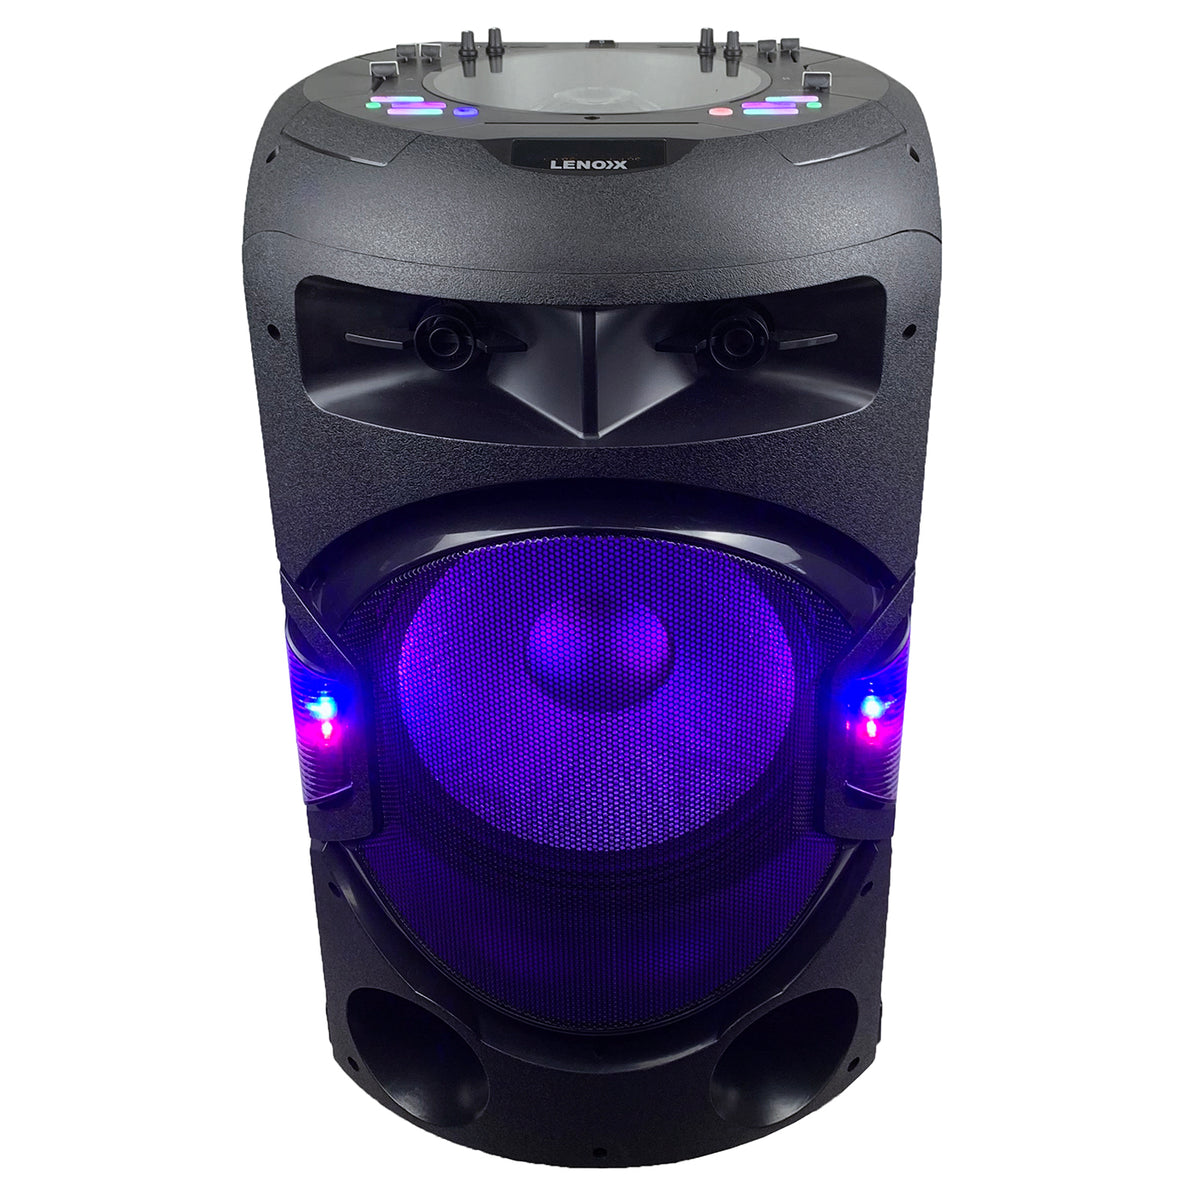 Bluetooth speaker BTD300 with purple lights on.